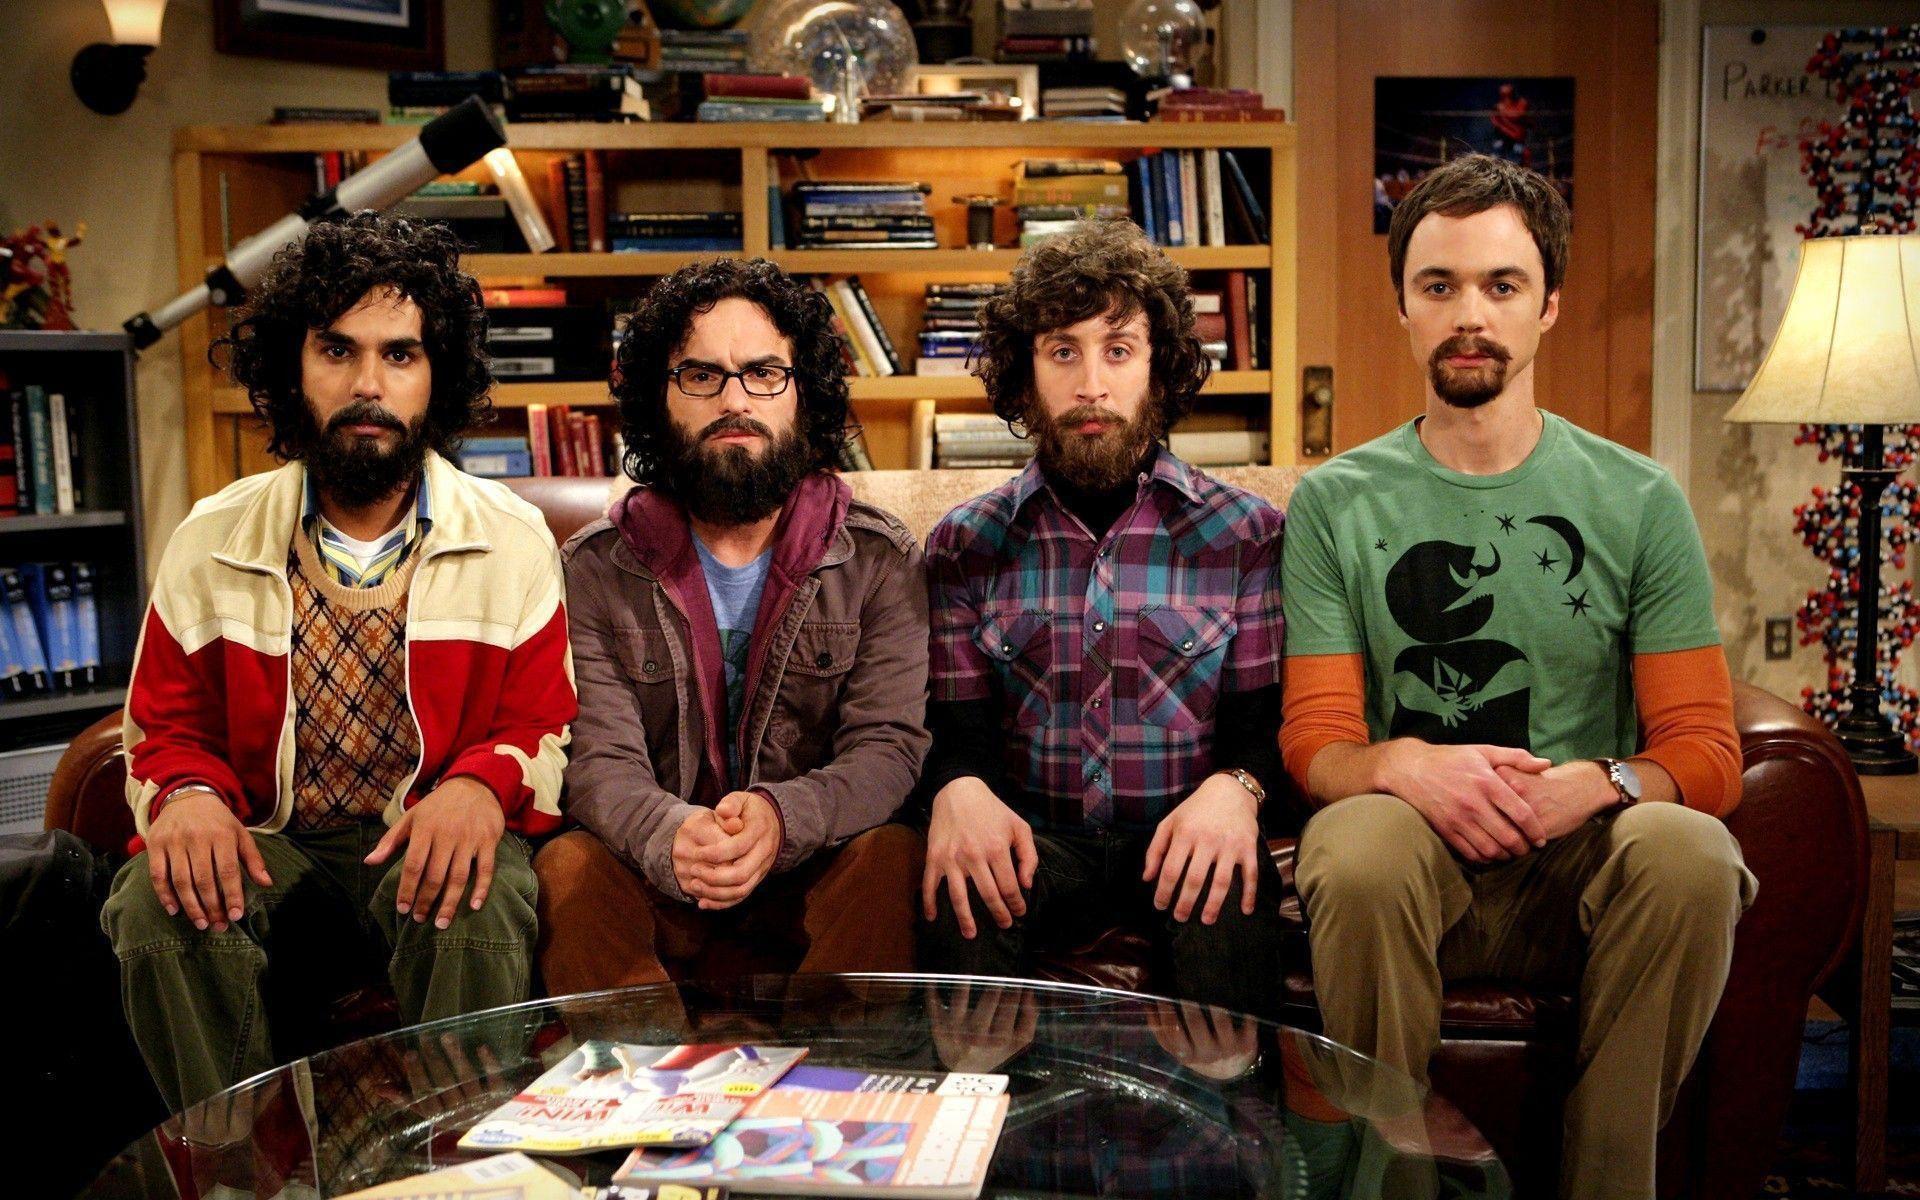 The Big Bang Theory Wallpapers